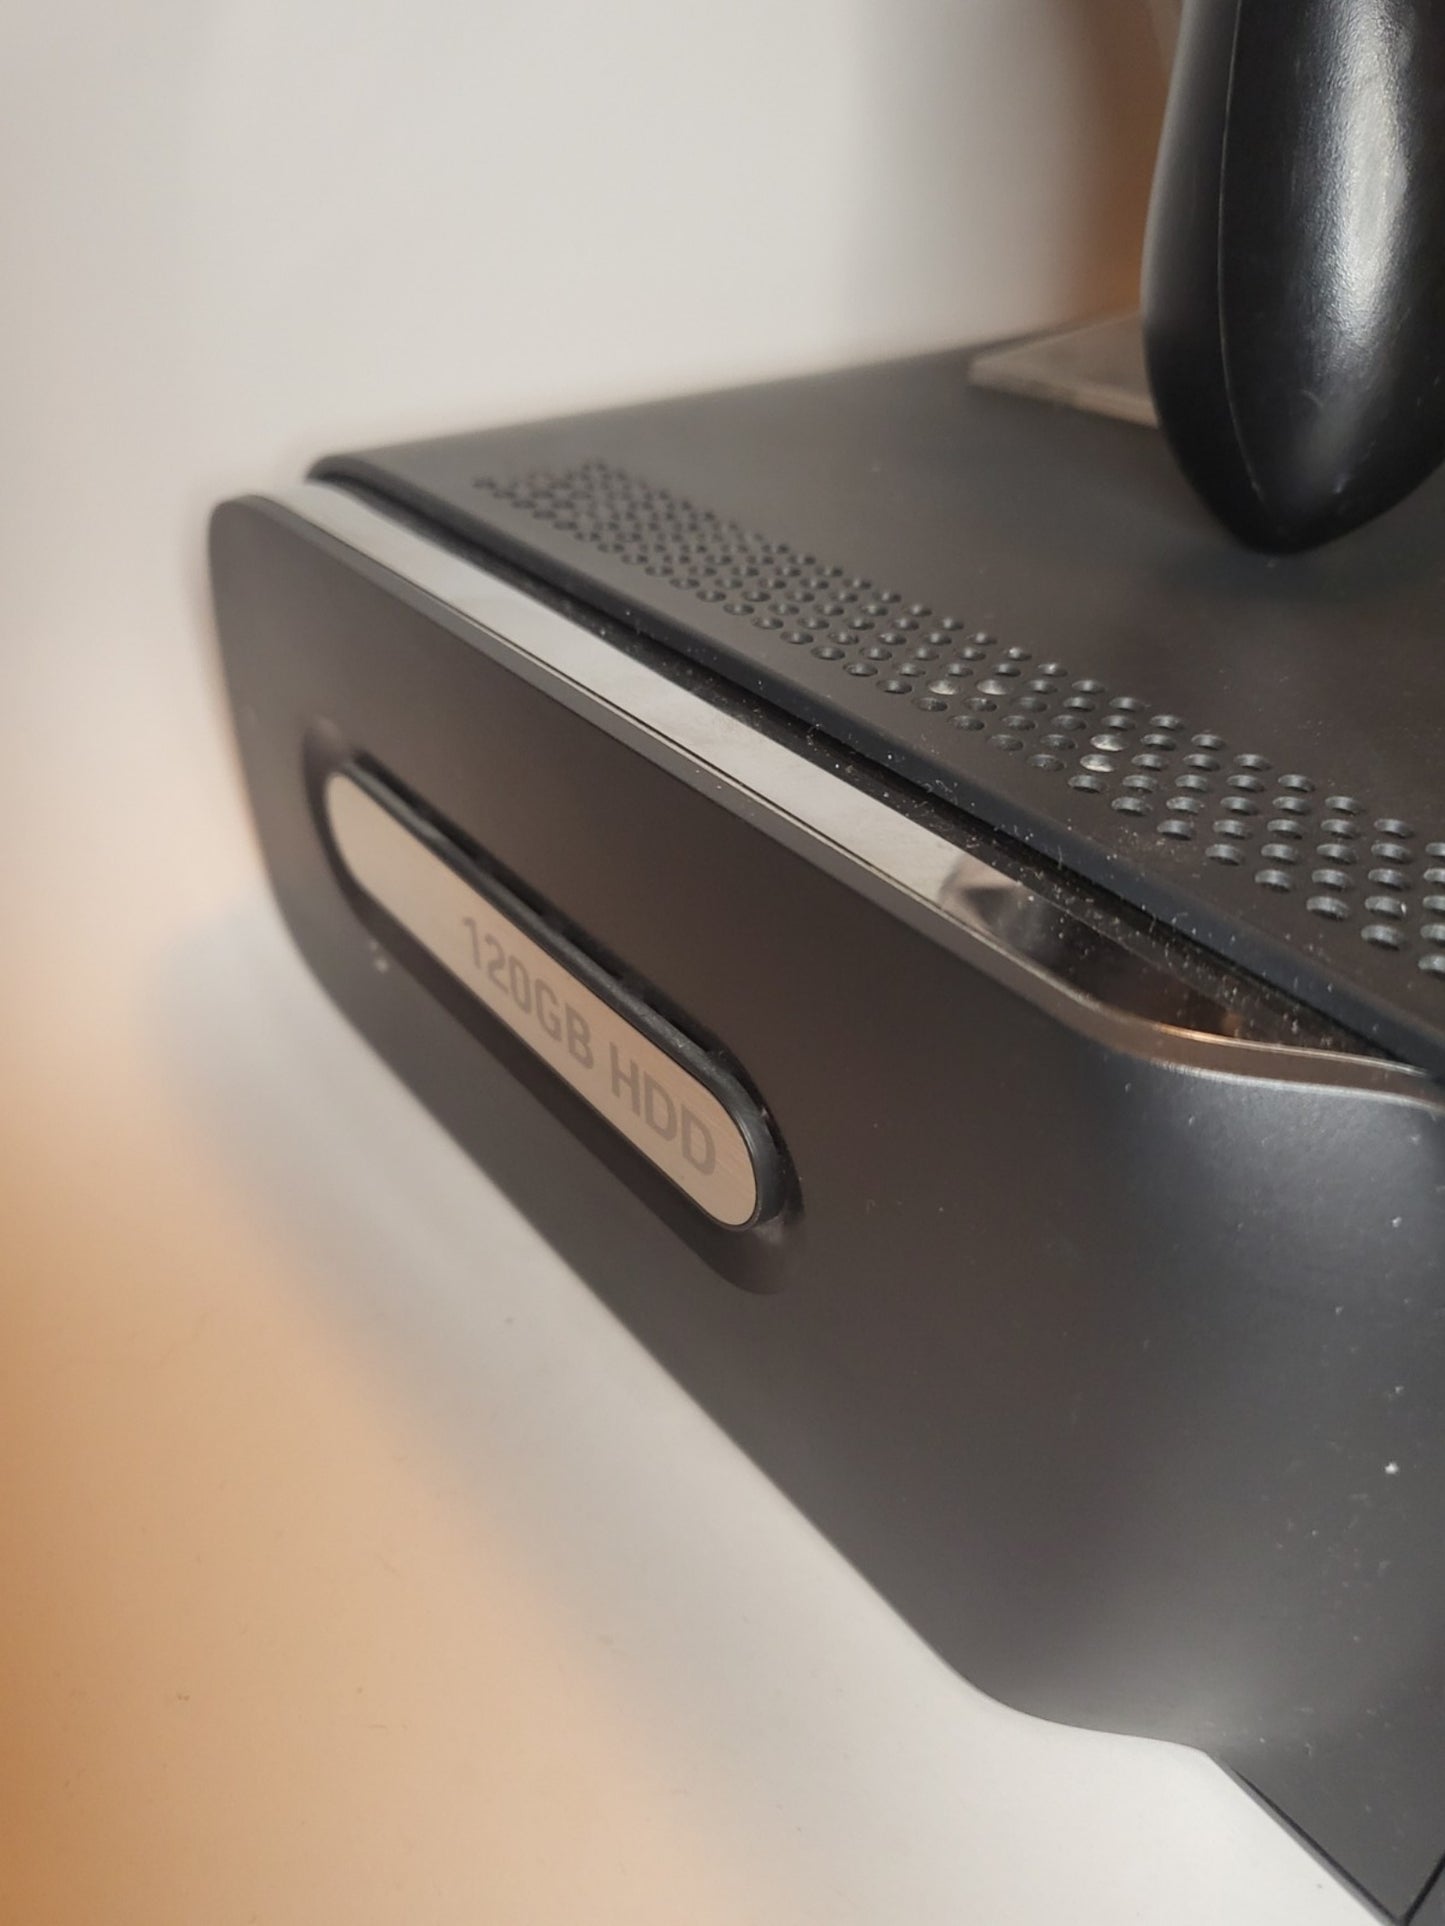 Schwarze Xbox 360 120 GB mit 1 Controller und allen Kabeln